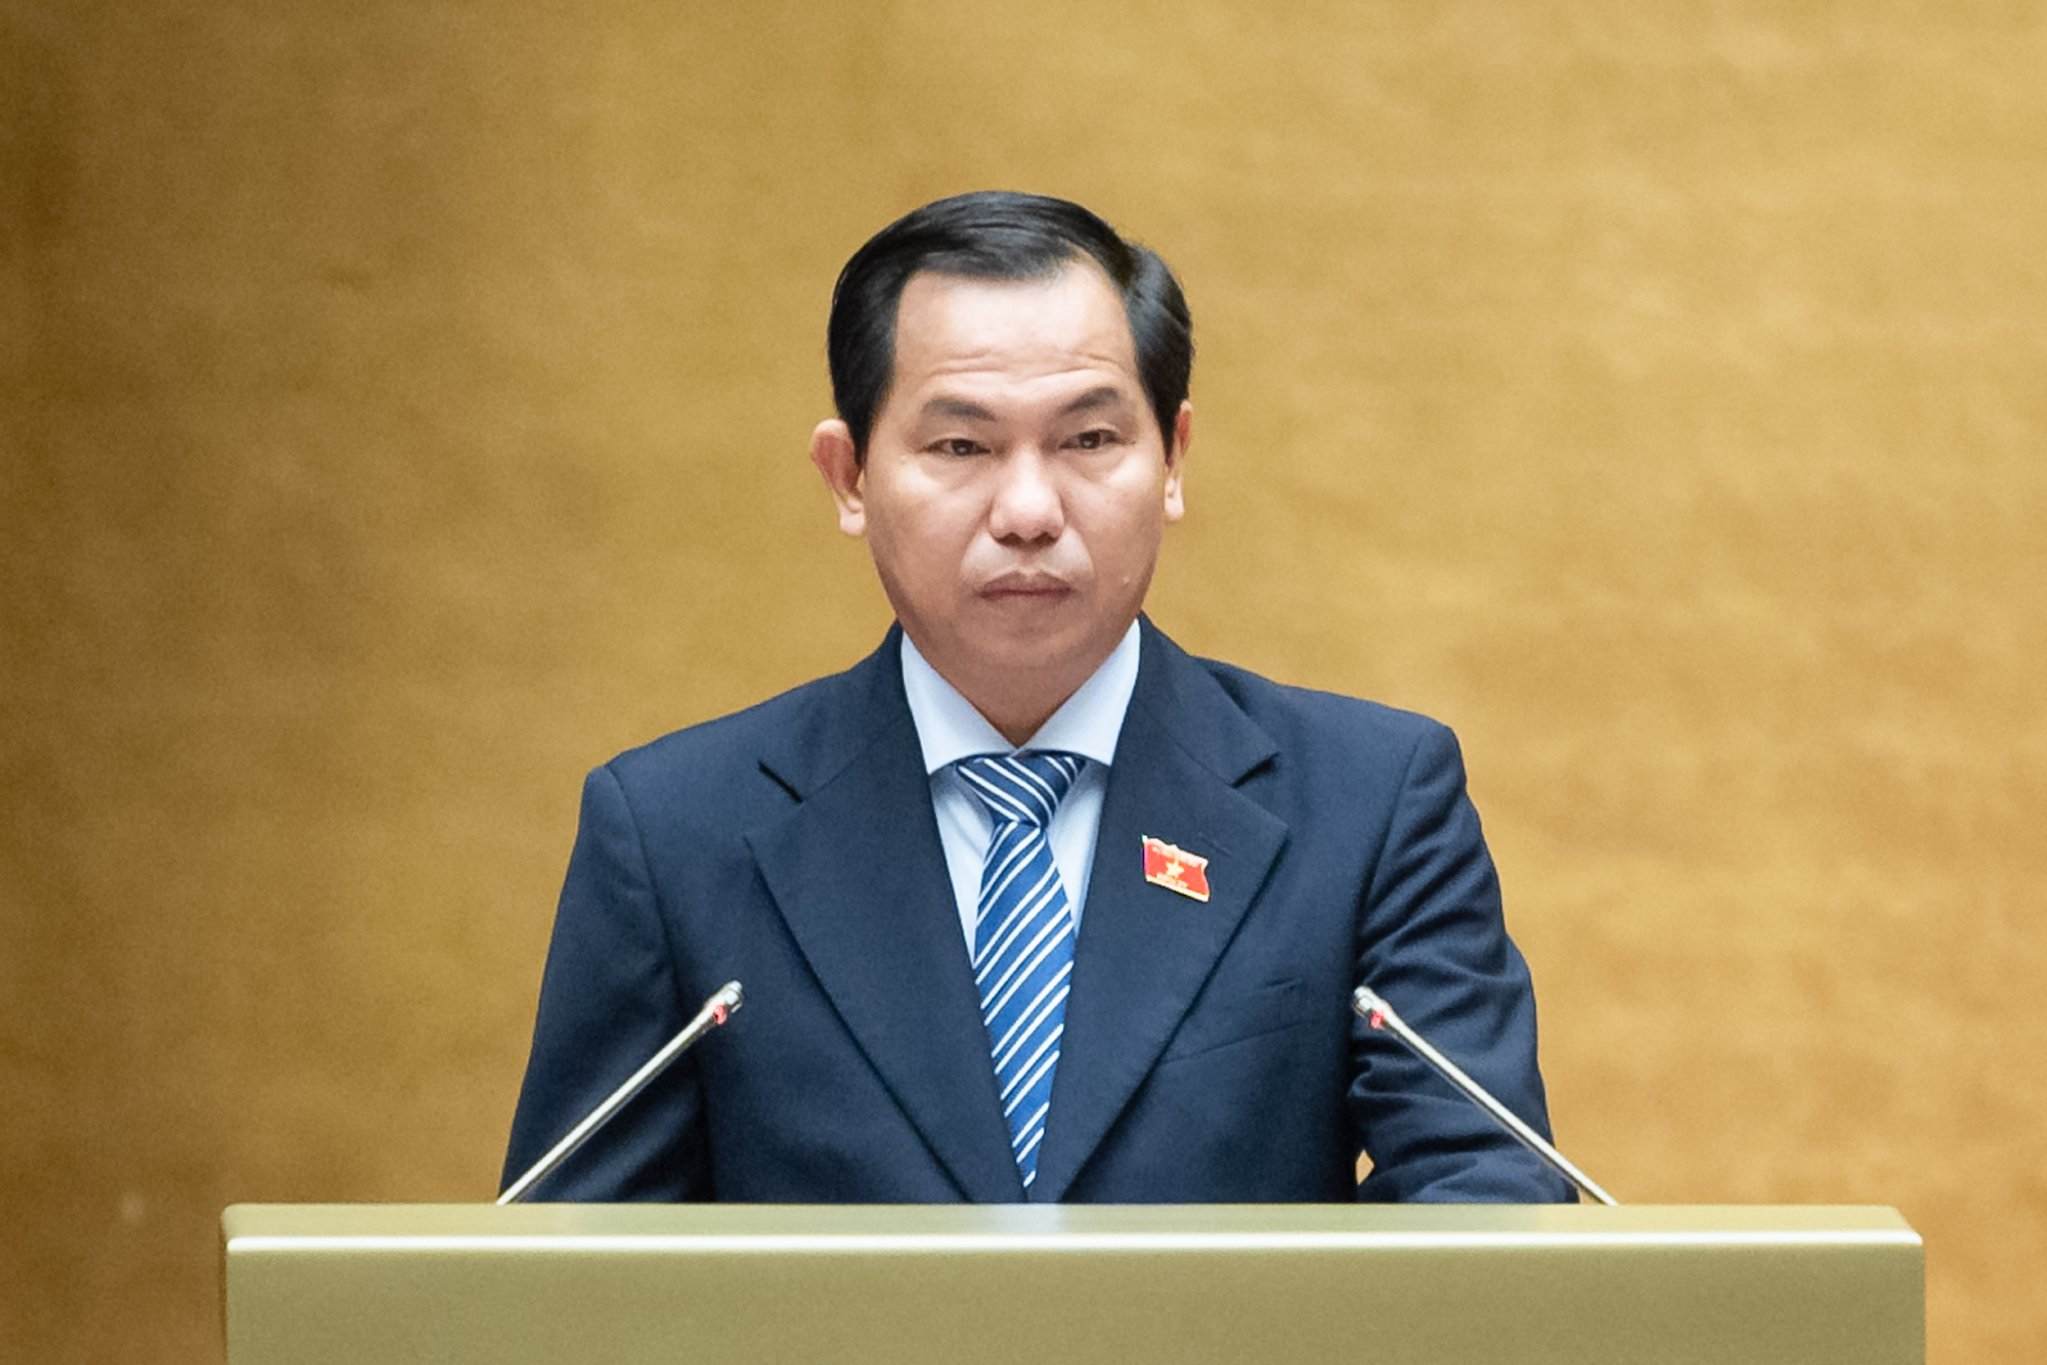 hủ nhiệm Ủy ban Tài chính, Ngân sách của Quốc hội Lê Quang Mạnh trình bày Báo cáo thẩm tra dự thảo Nghị quyết về việc áp dụng thuế thu nhập doanh nghiệp bổ sung theo quy định chống xói mòn cơ sở thuế toàn cầu. Ảnh: Media Quốc hội